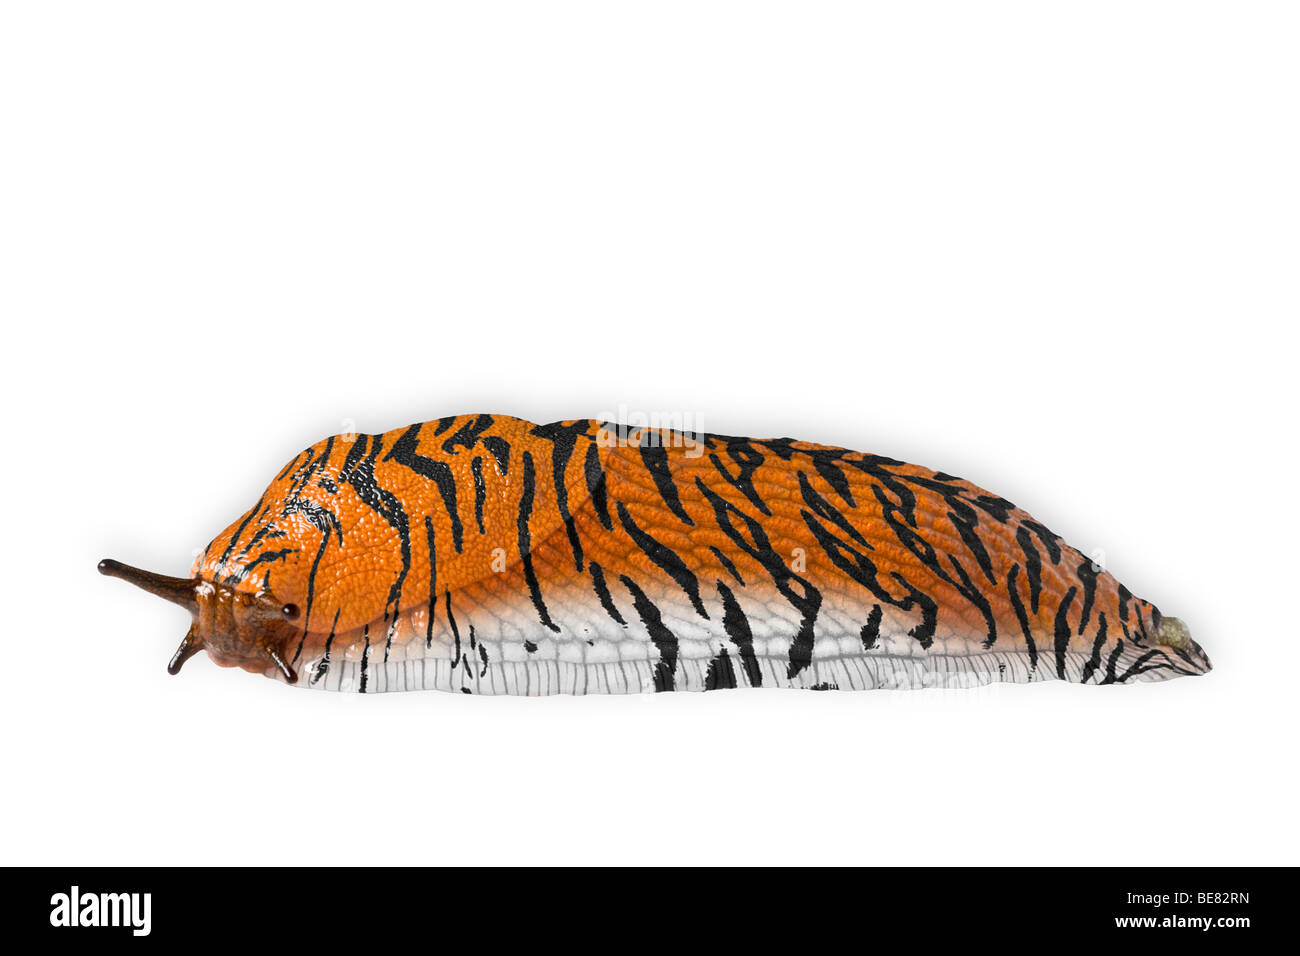 Une limace terrestre (photomontage). Limace terrestre tigrée (photomontage). Banque D'Images